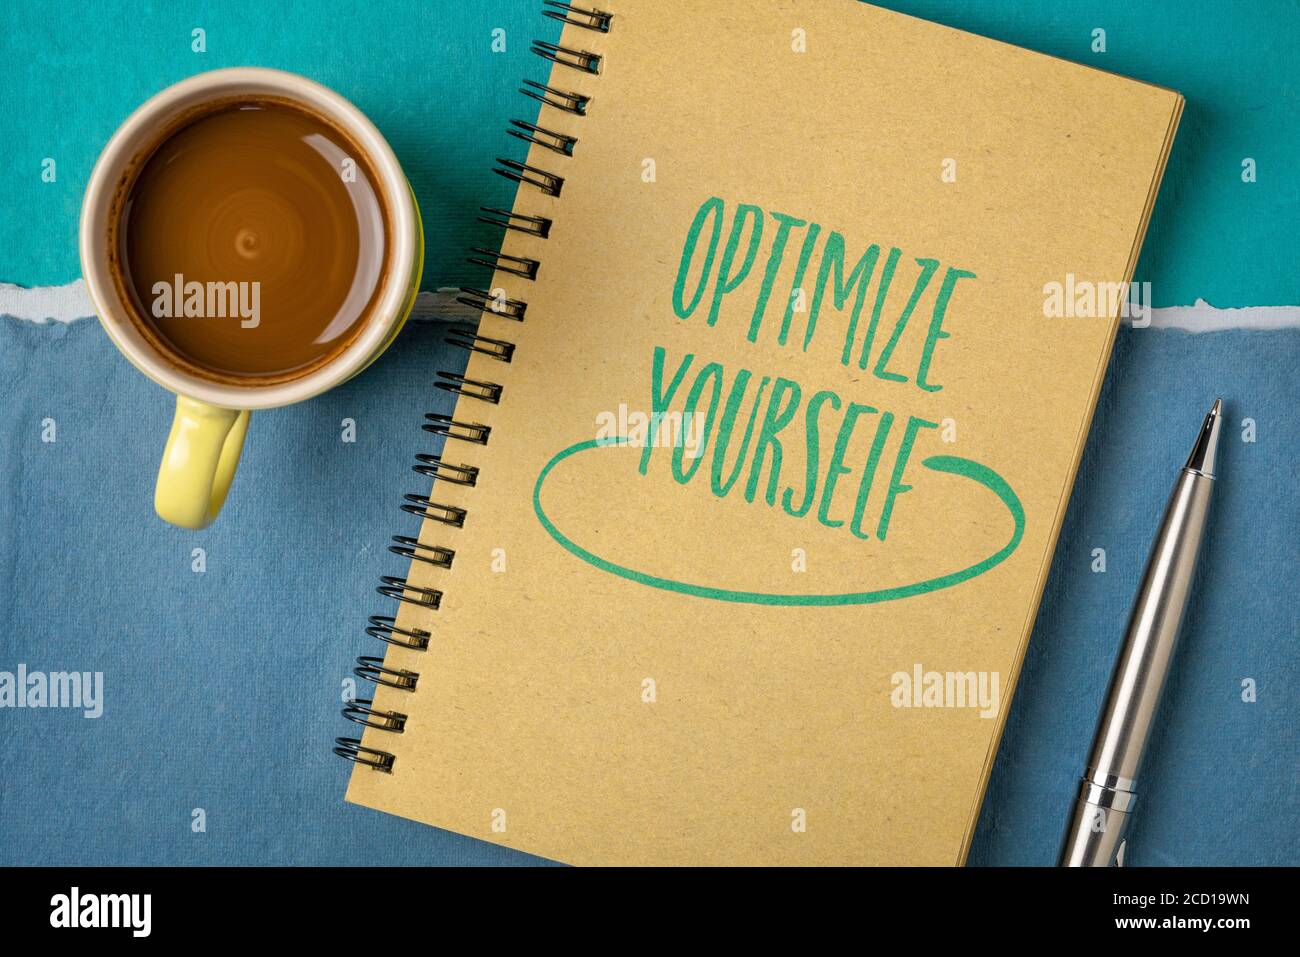 Optimieren Sie sich selbst inspirierende Note - Handschrift in einem Skizzenbuch mit einer Tasse Kaffee, Selbstverbesserung und persönlichem Entwicklungskonzept Stockfoto